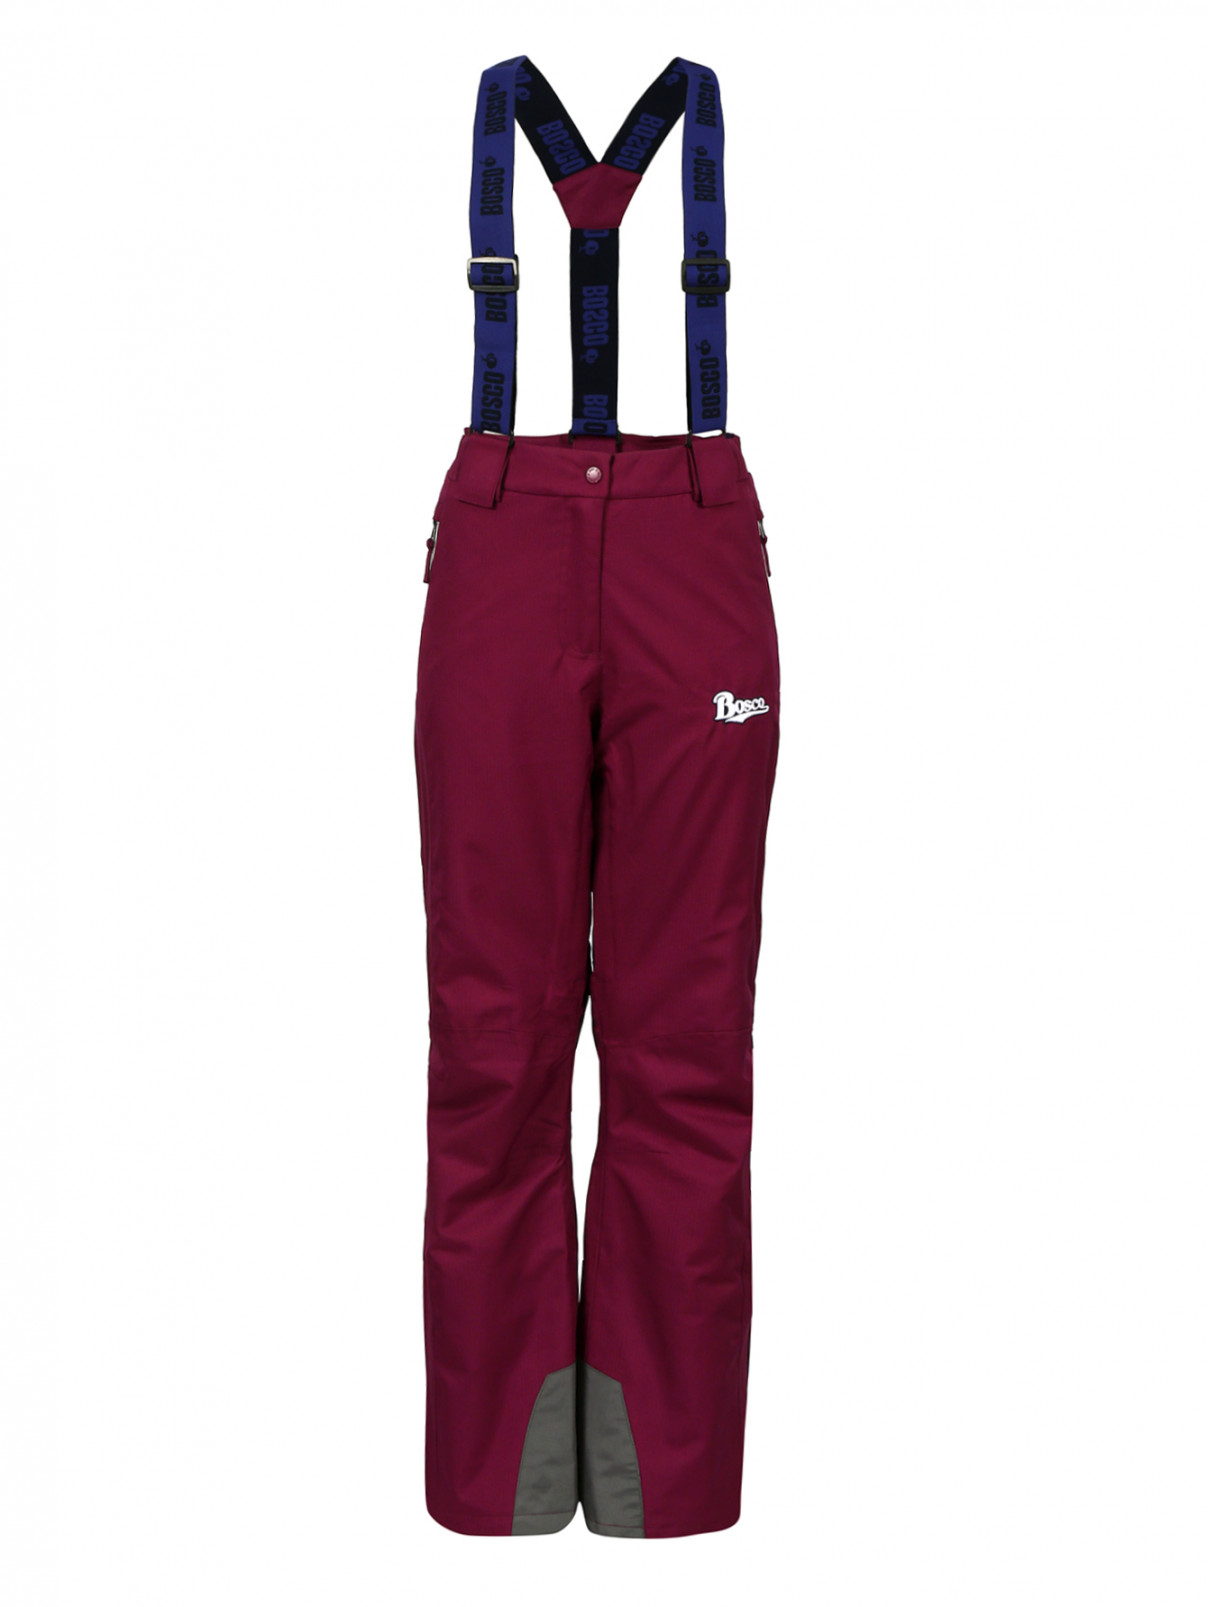 Горнолыжные брюки на лямках BOSCO  –  Общий вид  – Цвет:  Фиолетовый